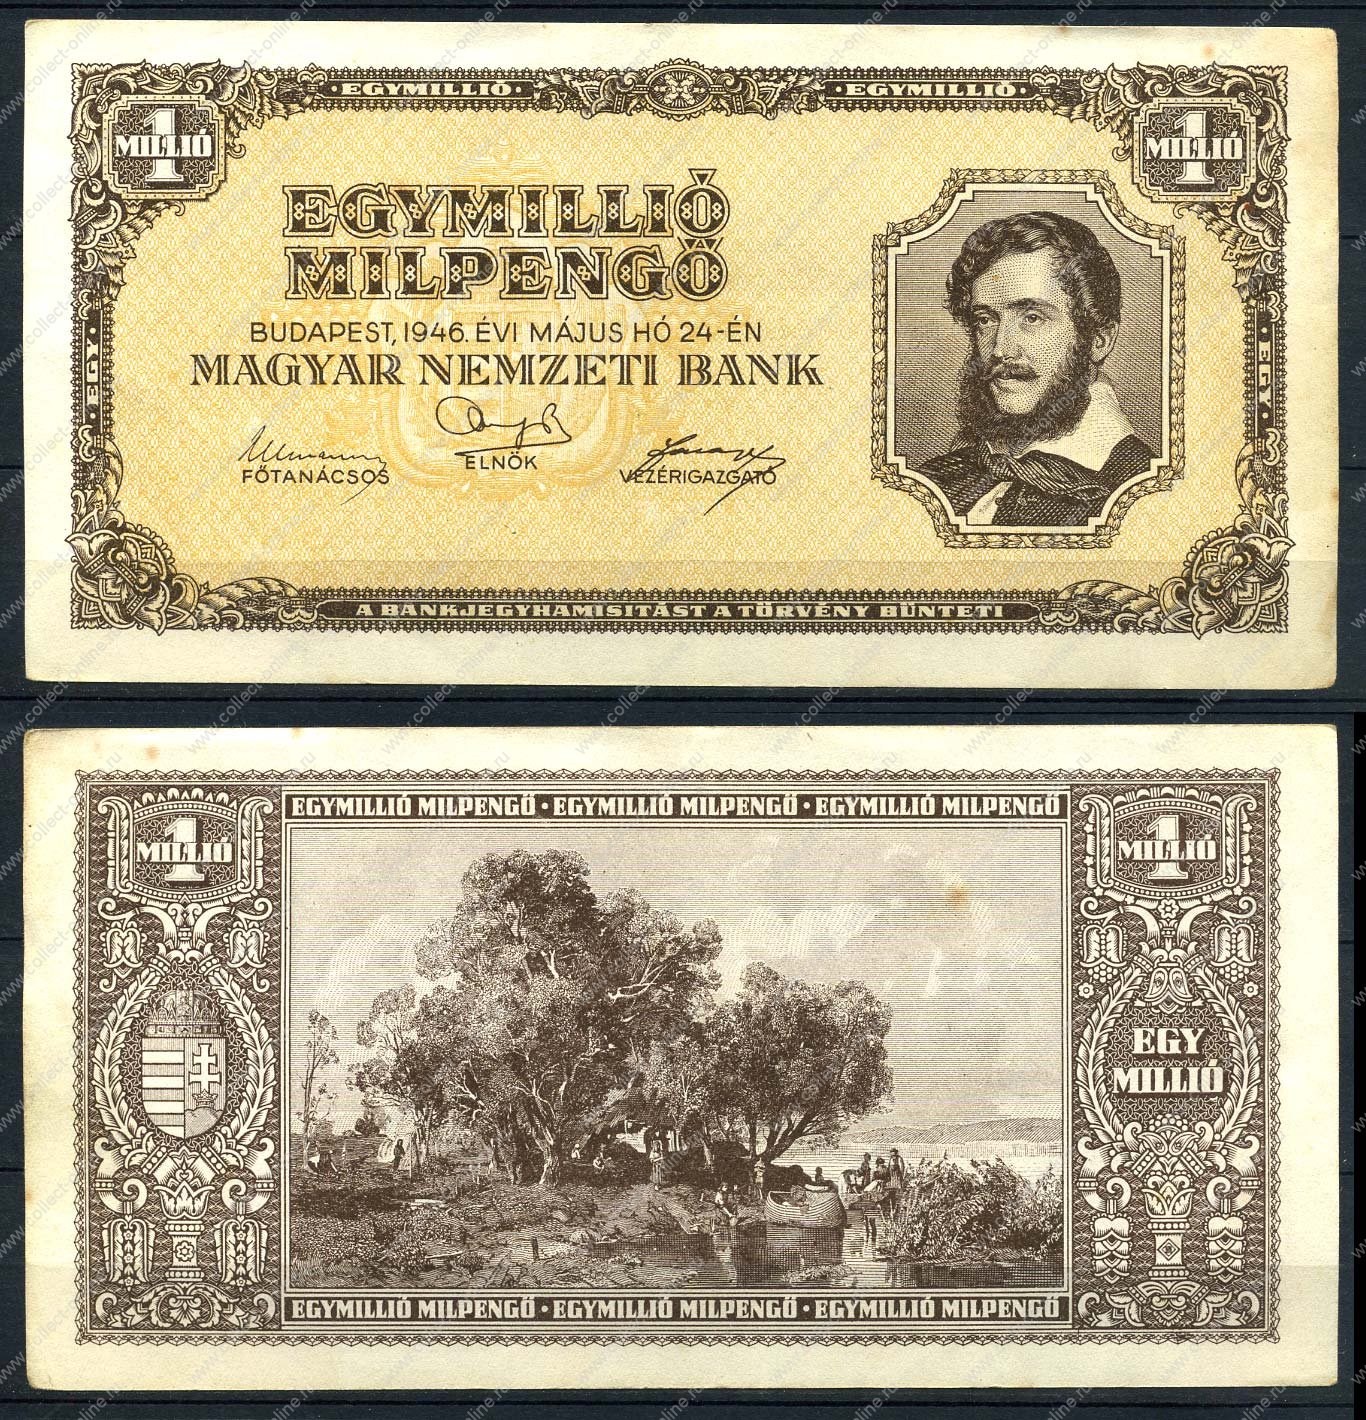 1 млн б с. 1000000000 Пенго 1946. 1000000000 Пенго Венгрия 1946. Банкноты Венгрии 1946. Секстиллион пенге.